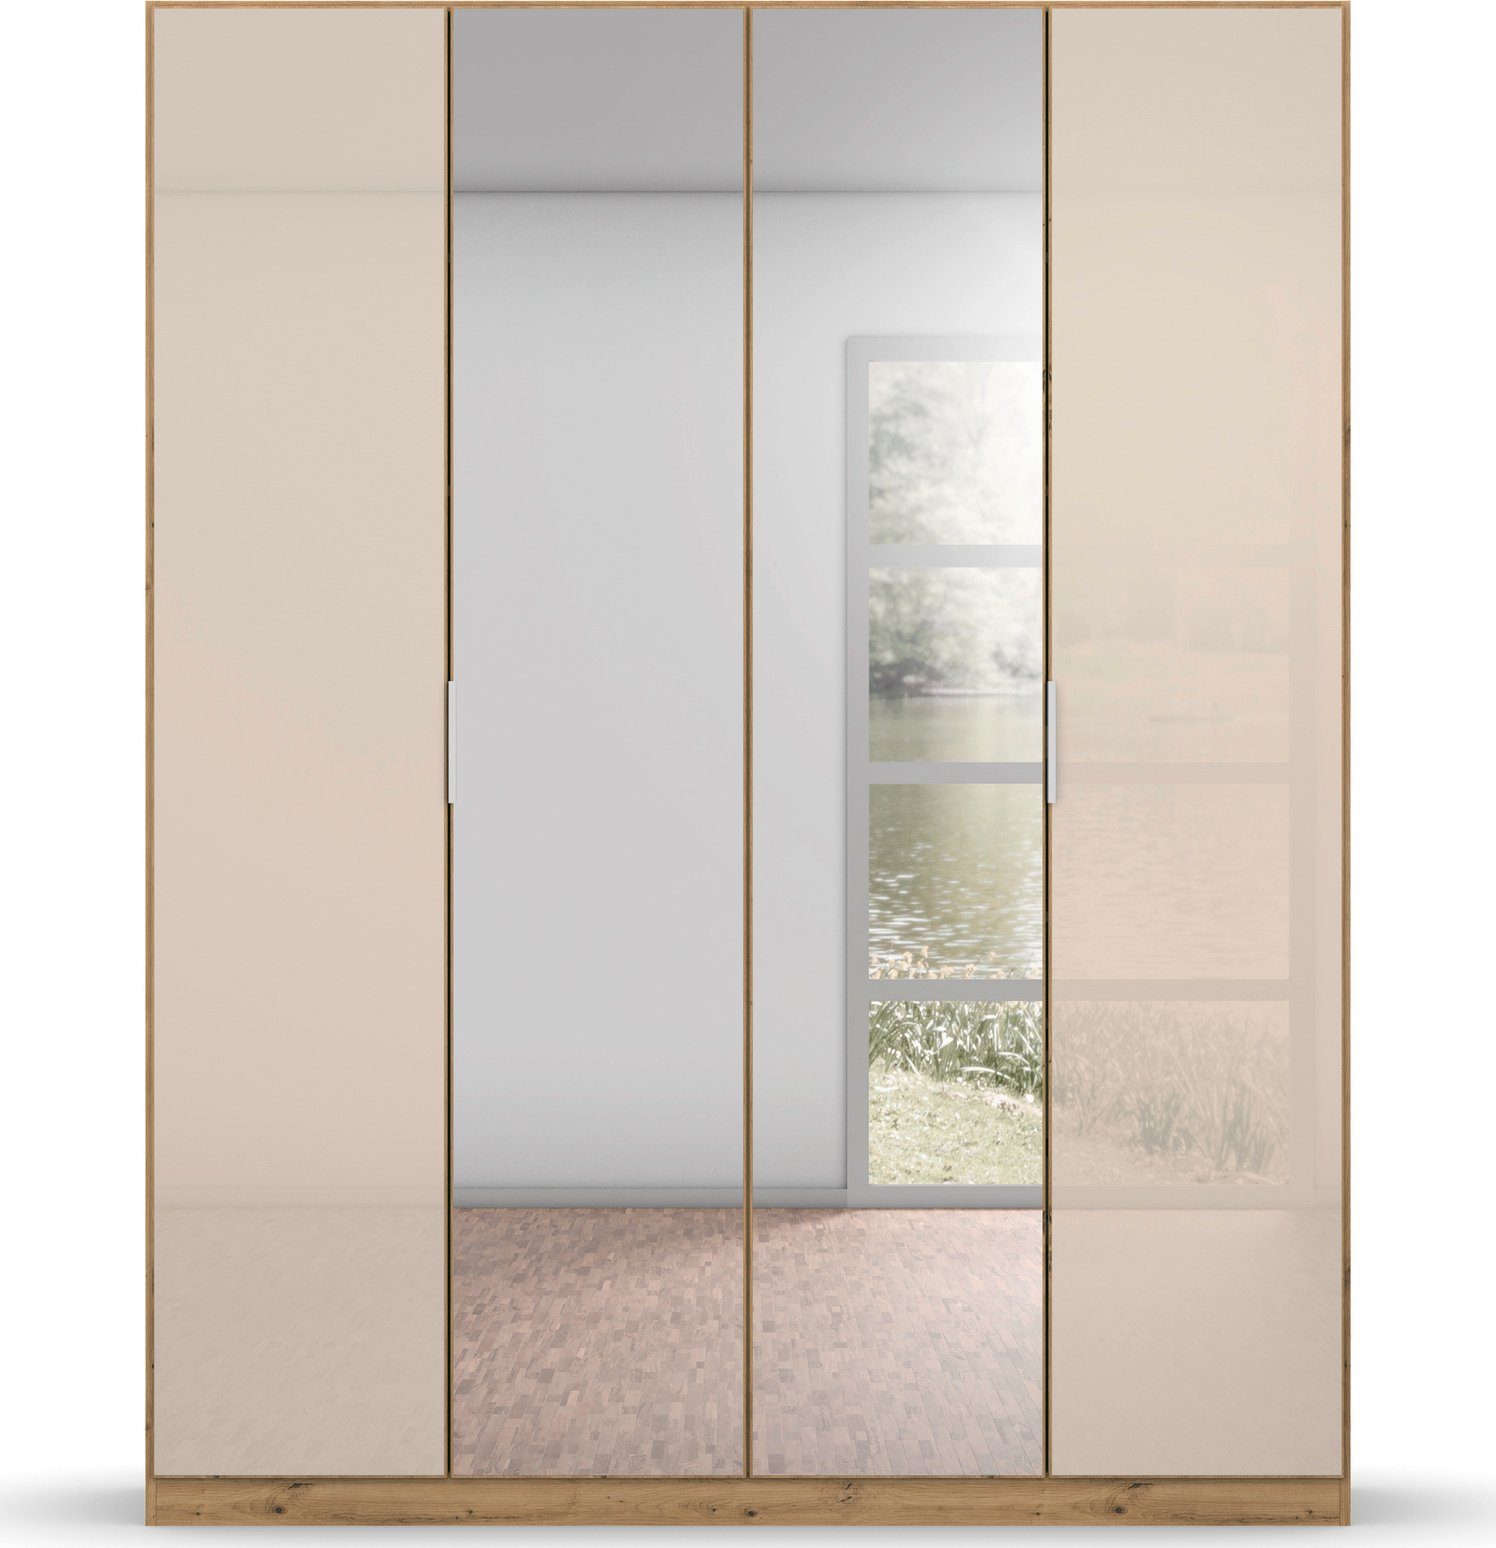 inkl. Drehtürenschrank Glasfront 2 Böden mit Spiegel, Innenschubladen sowie extra rauch Koluna